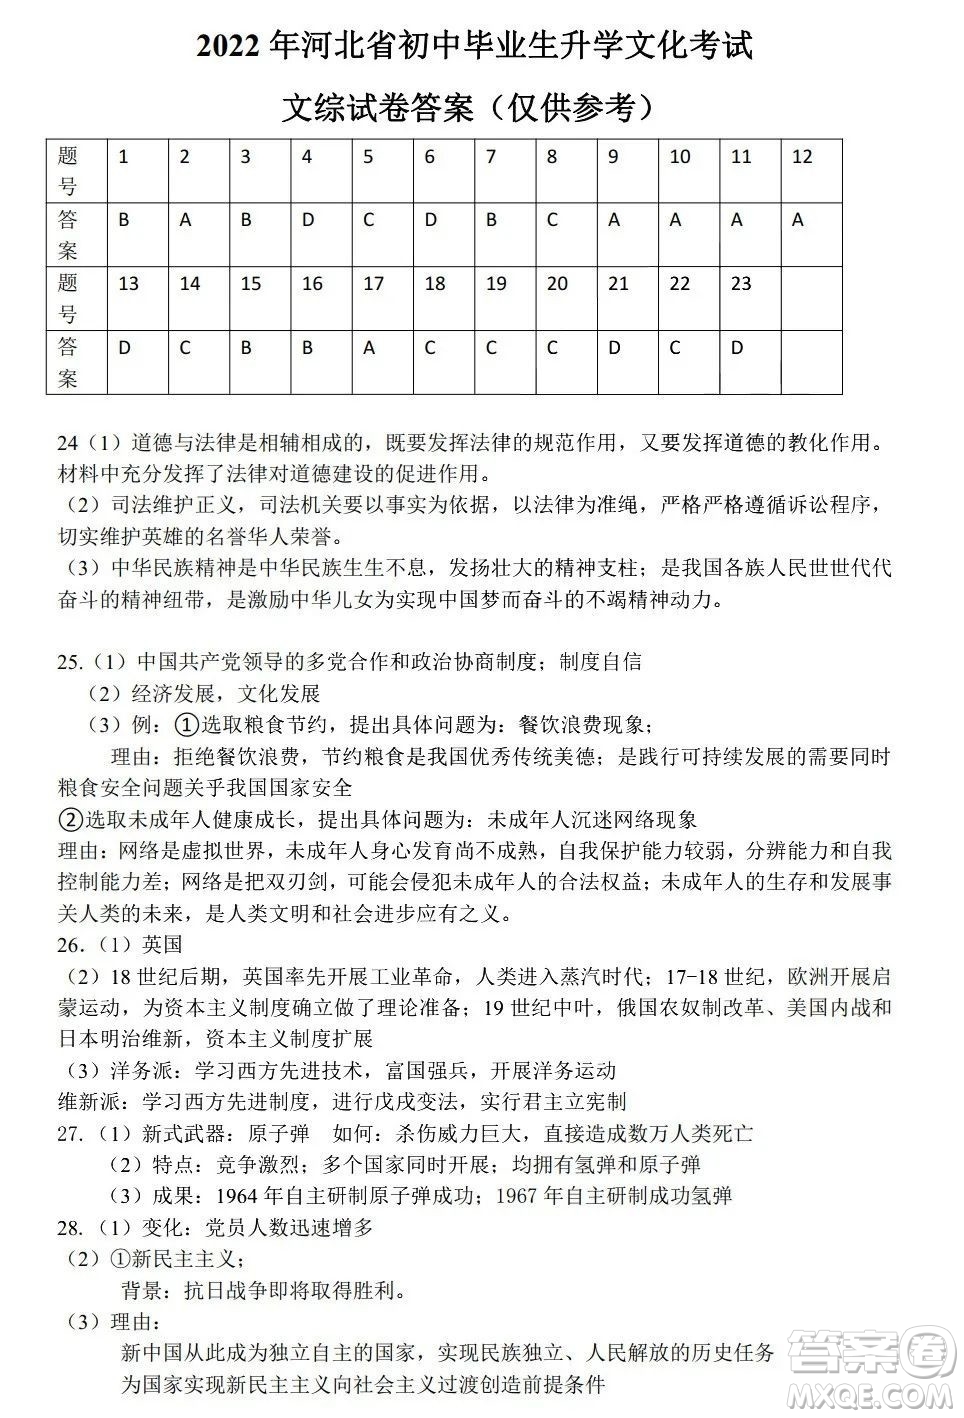 2022年河北省初中毕业生升学文化课考试文科综合试卷及答案插图(9)